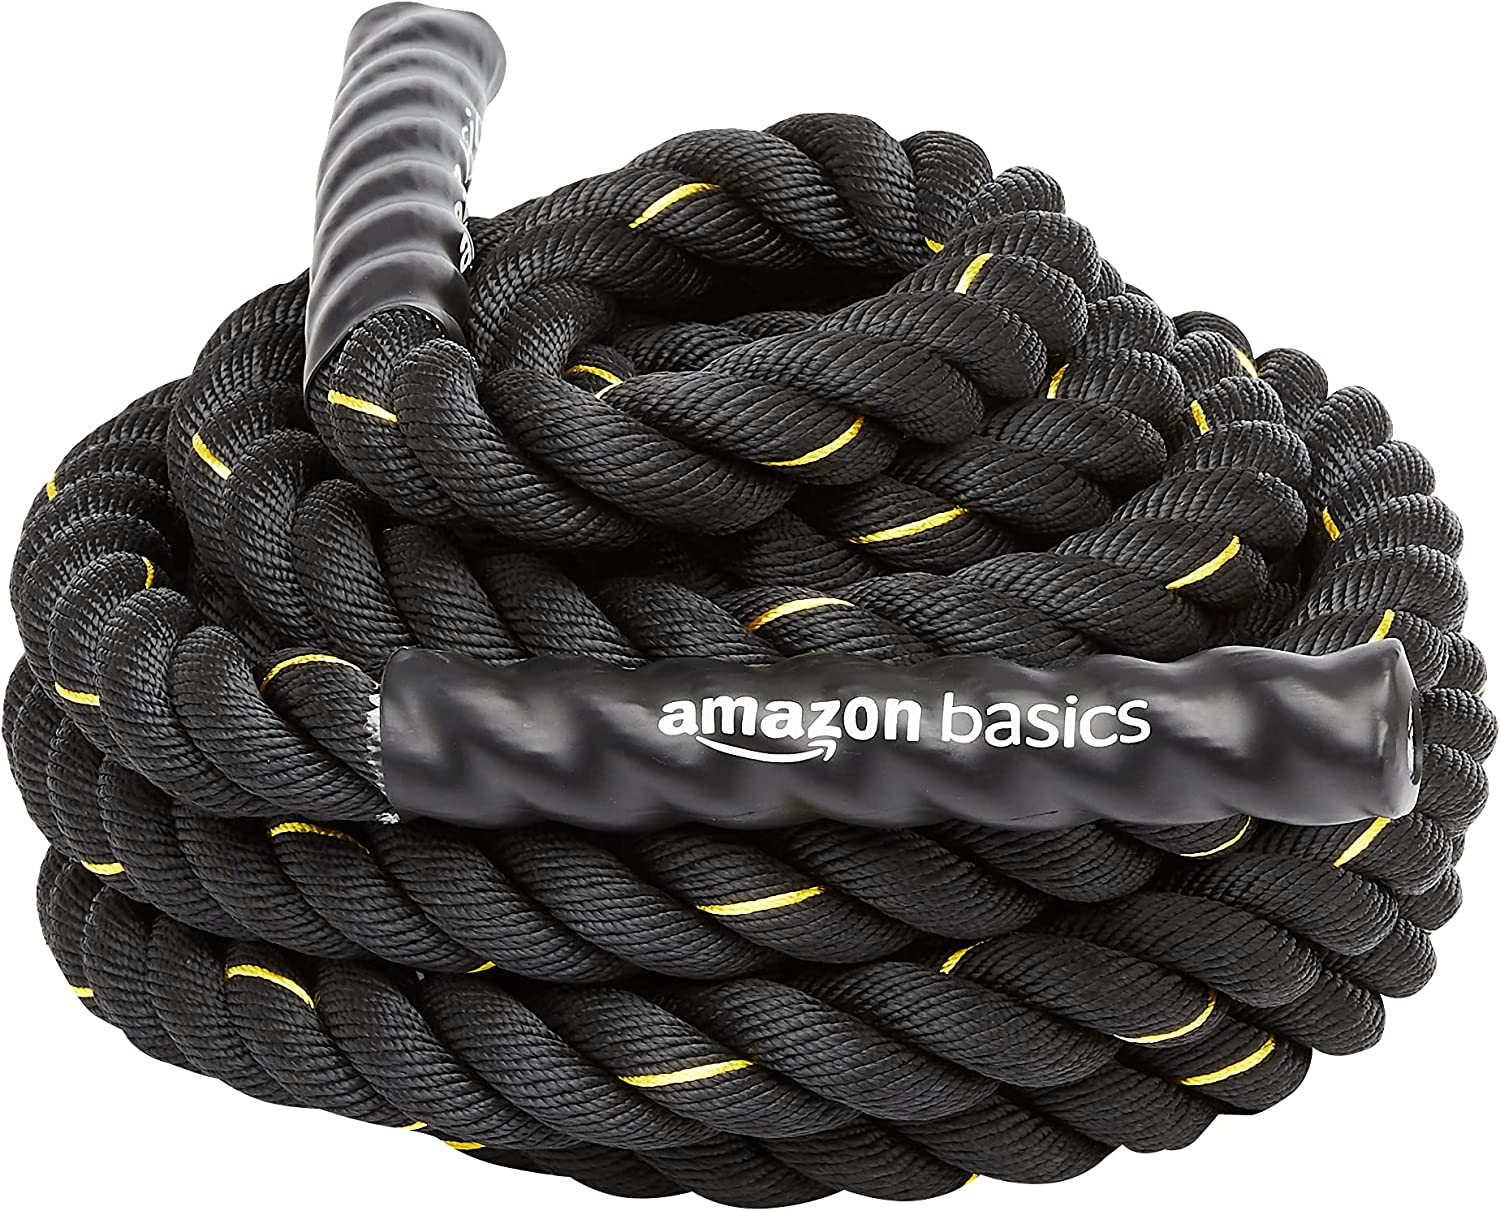 amazon base battle rope isolated on white background